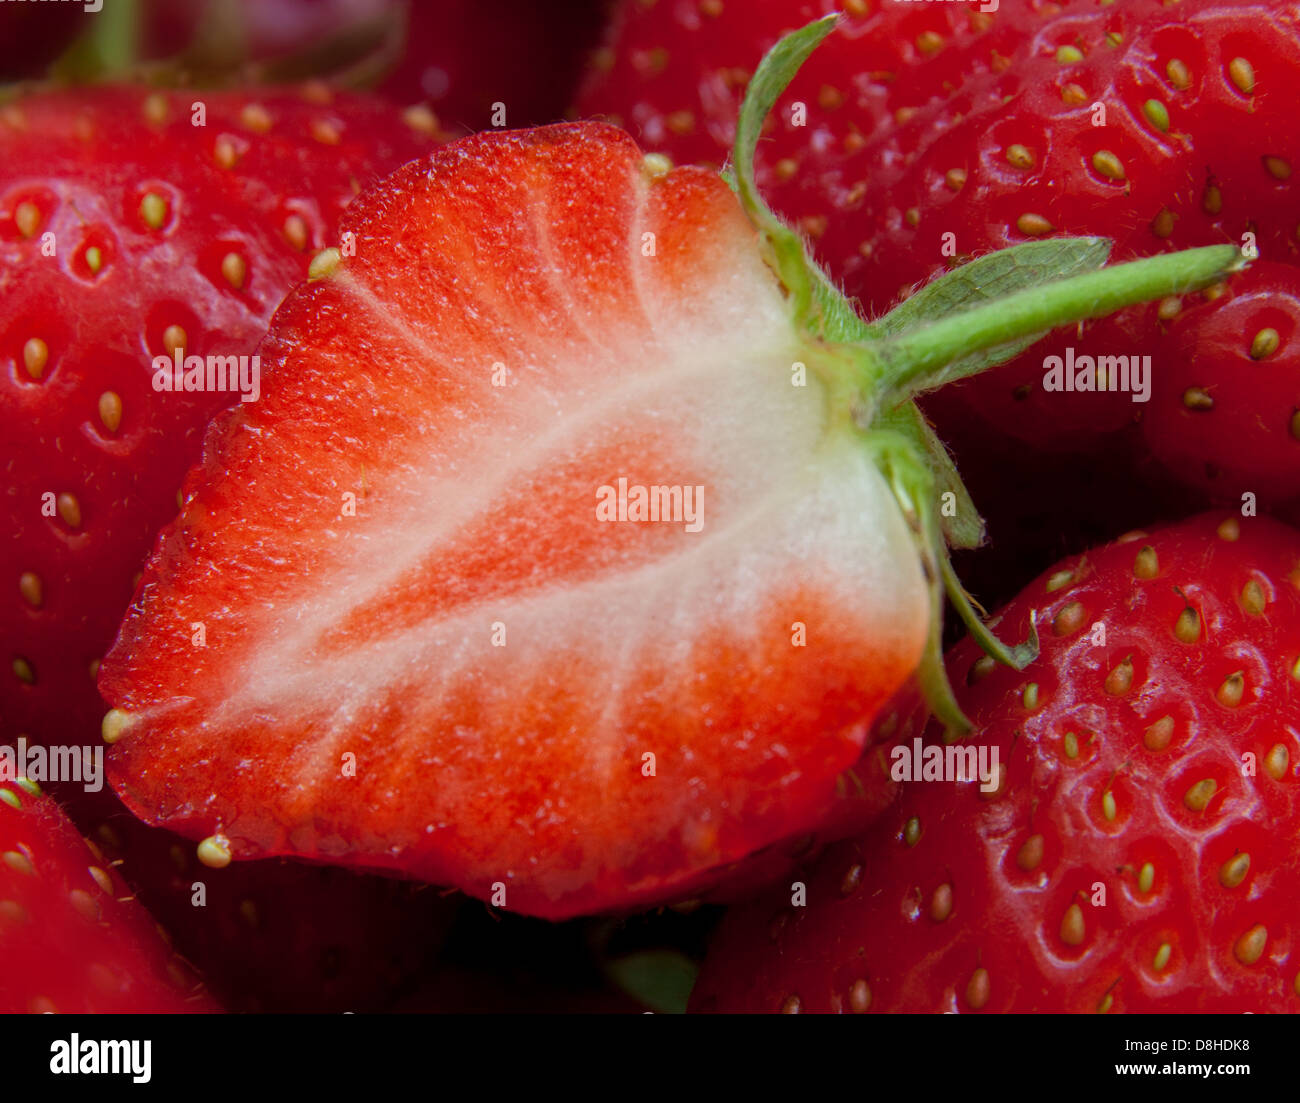 Fragole britanniche così brillante frutta rossa d'estate! Primo piano di un frutto tagliato a metà, mostrando semi Foto Stock